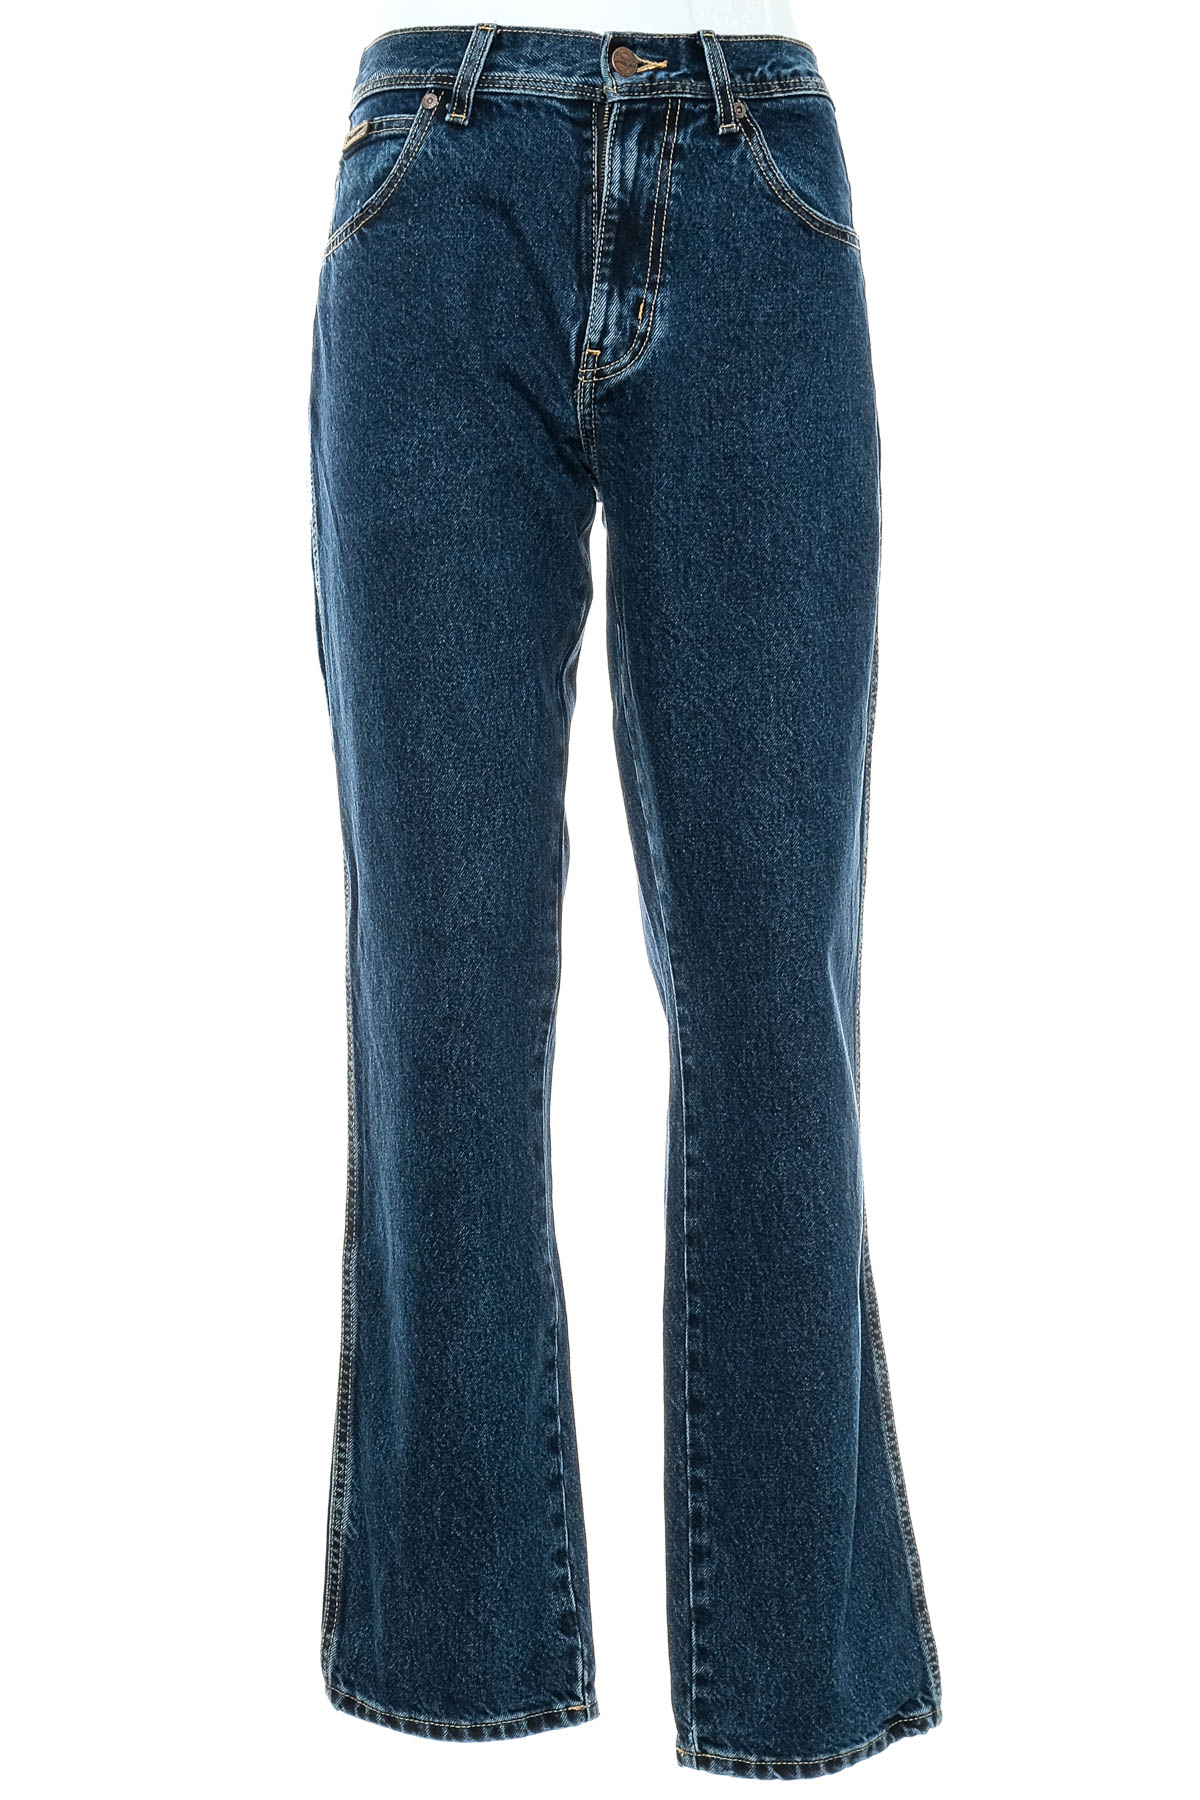 Men's jeans - Wrangler - 0